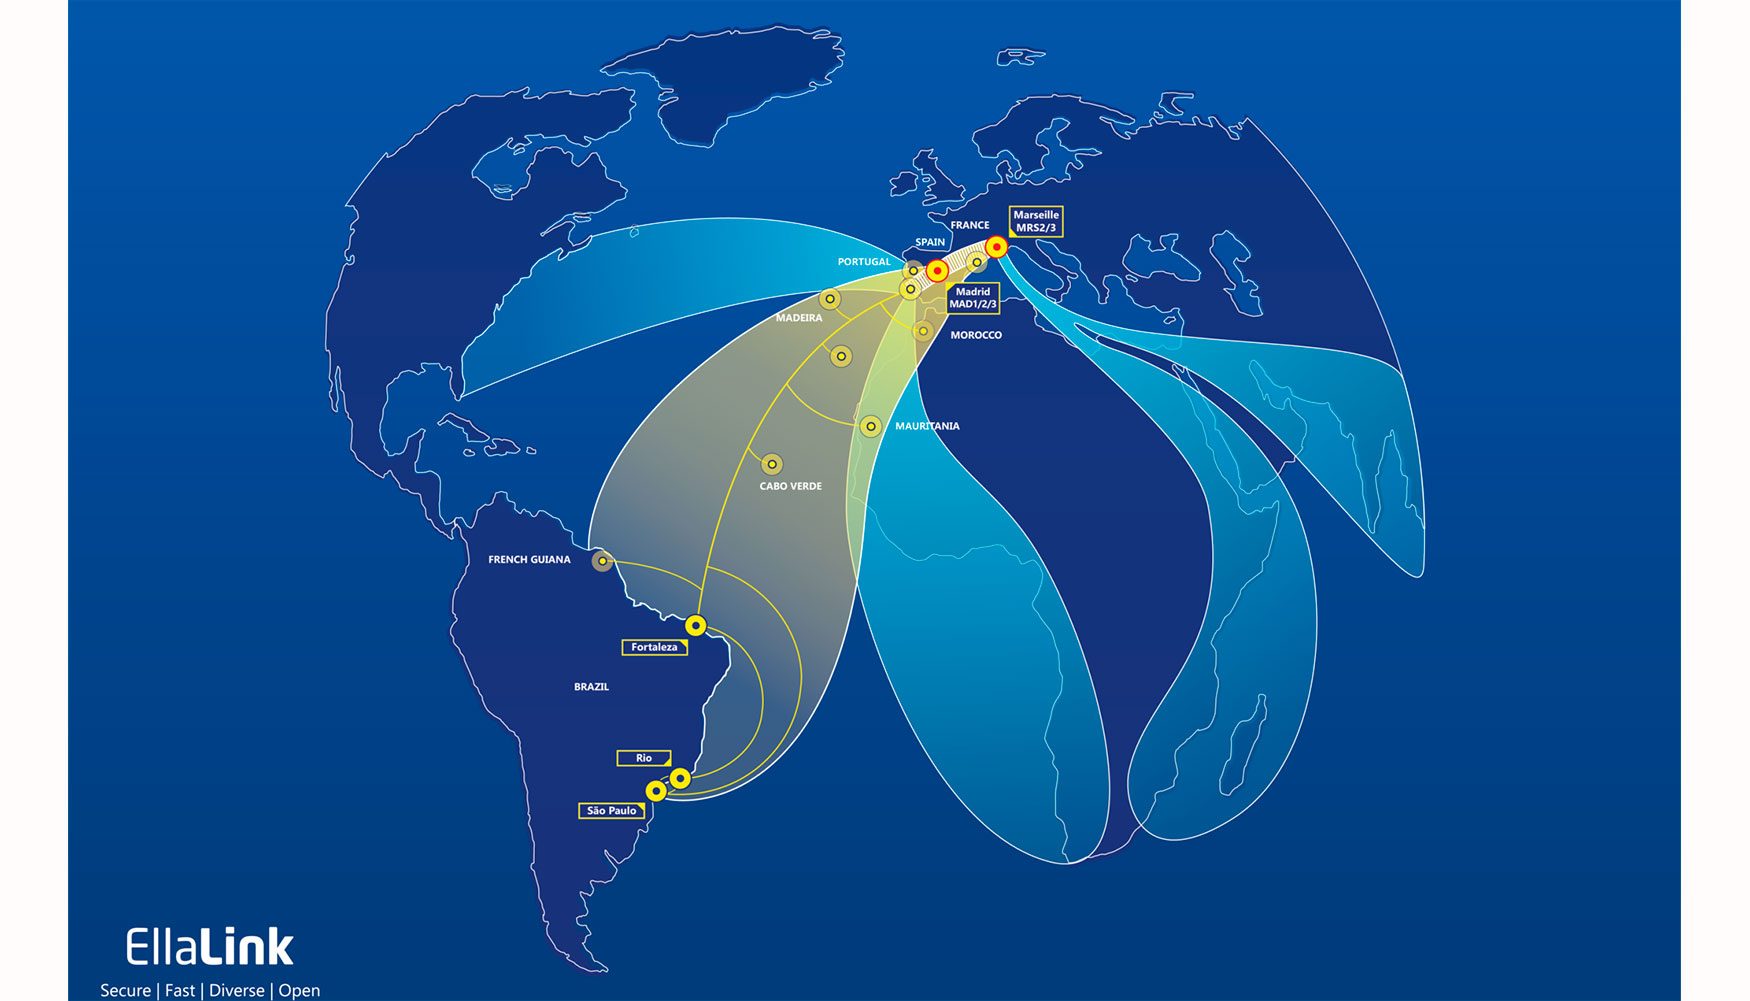 El cable EllaLink, que conecta Amrica Latina con Europa, es el primero en unir ambos continentes con una conexin directa...